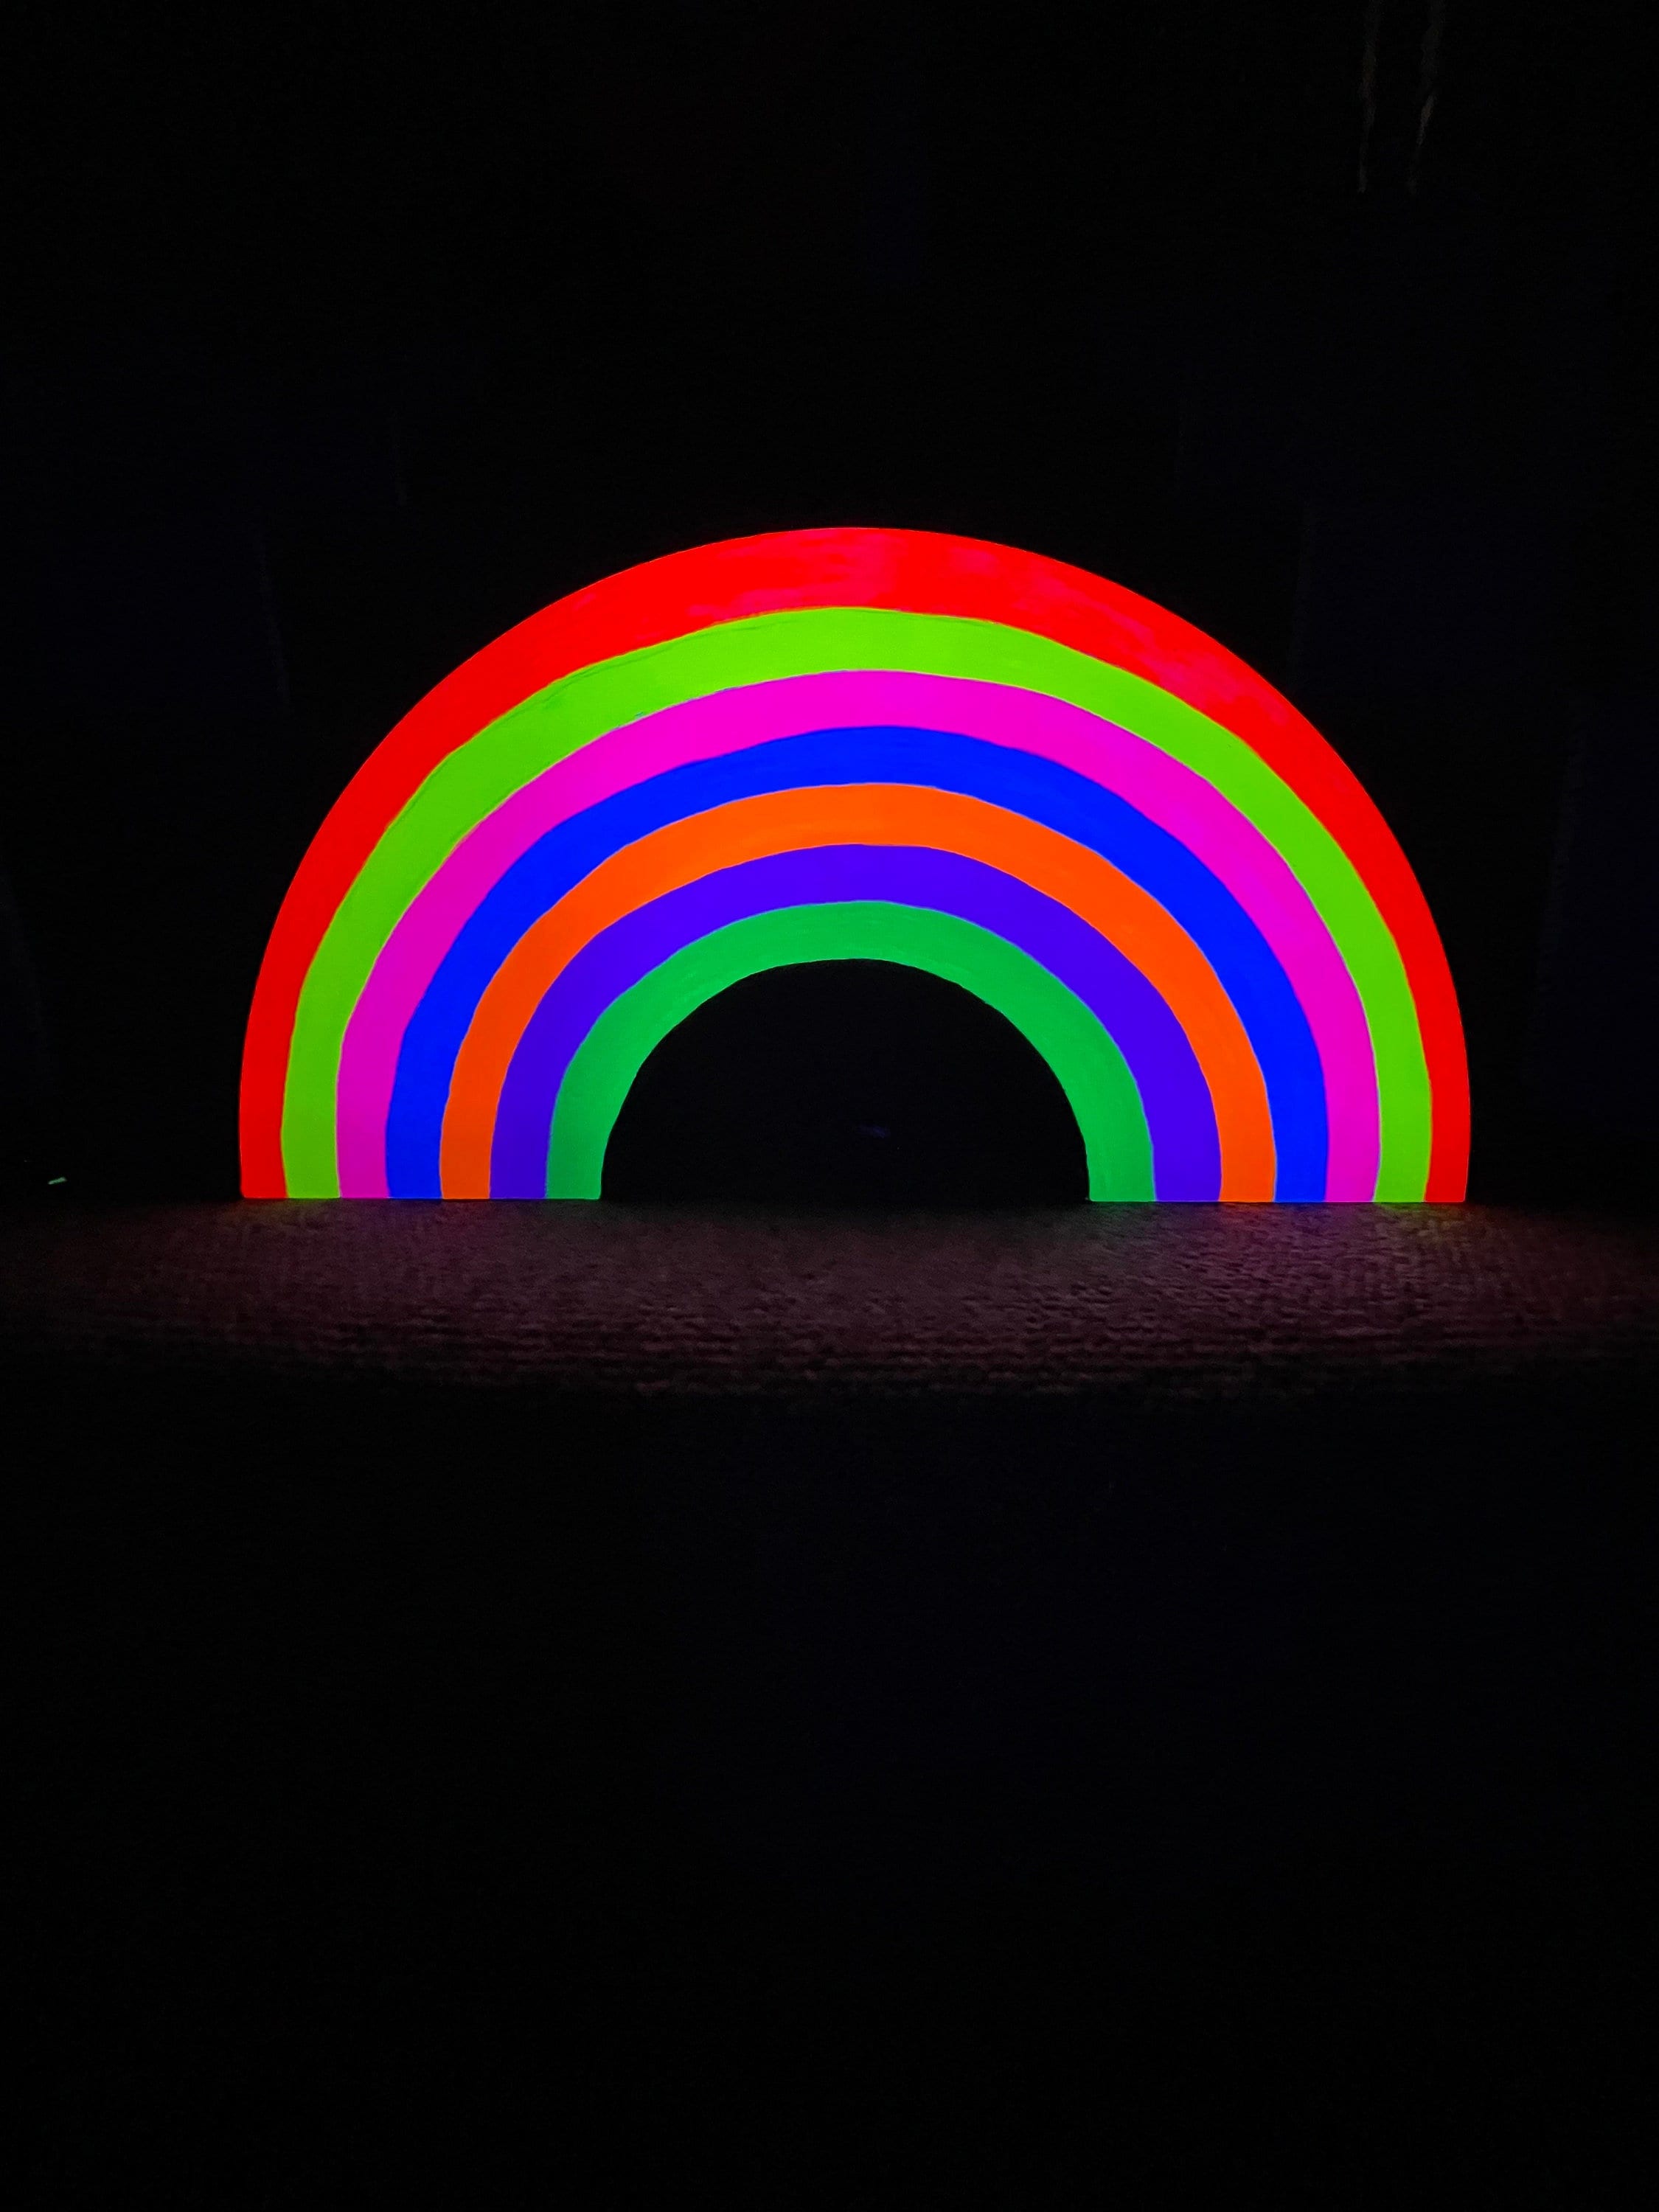  Regenbogen Hintergrundbild 2250x3000. Regenbogen Malerei UV Dekor Regenbogen Dekor Neon